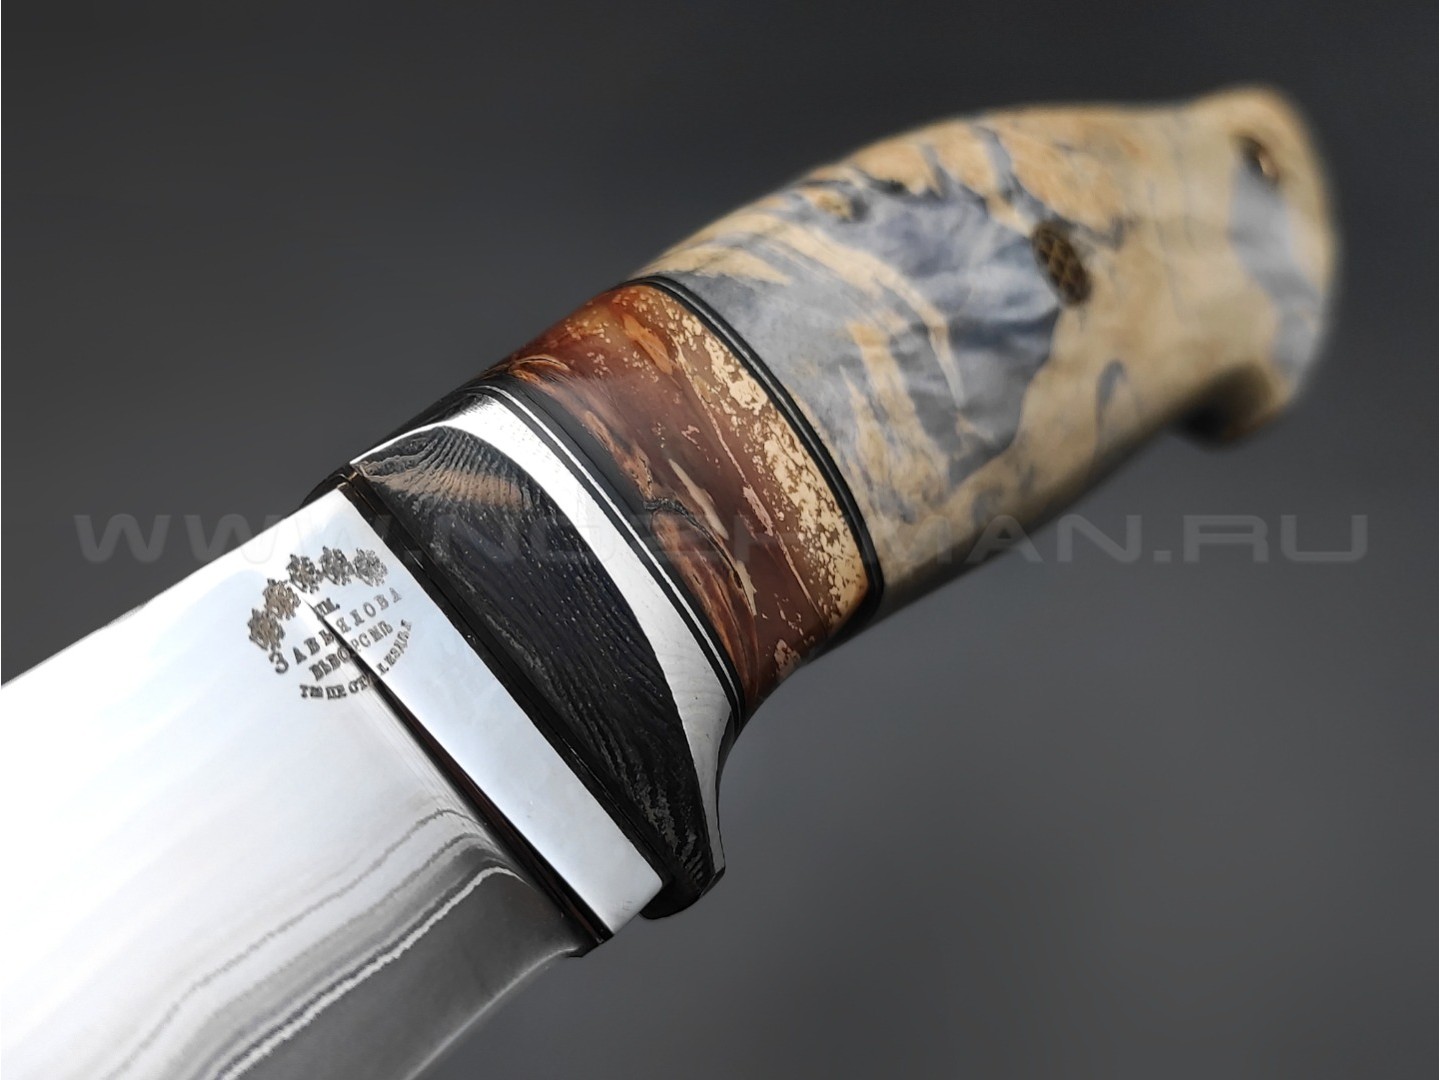 Нож "Скинер-Б" ламинированная сталь, рукоять кап клёна, мокуме, зуб мамонта (Тов. Завьялова)